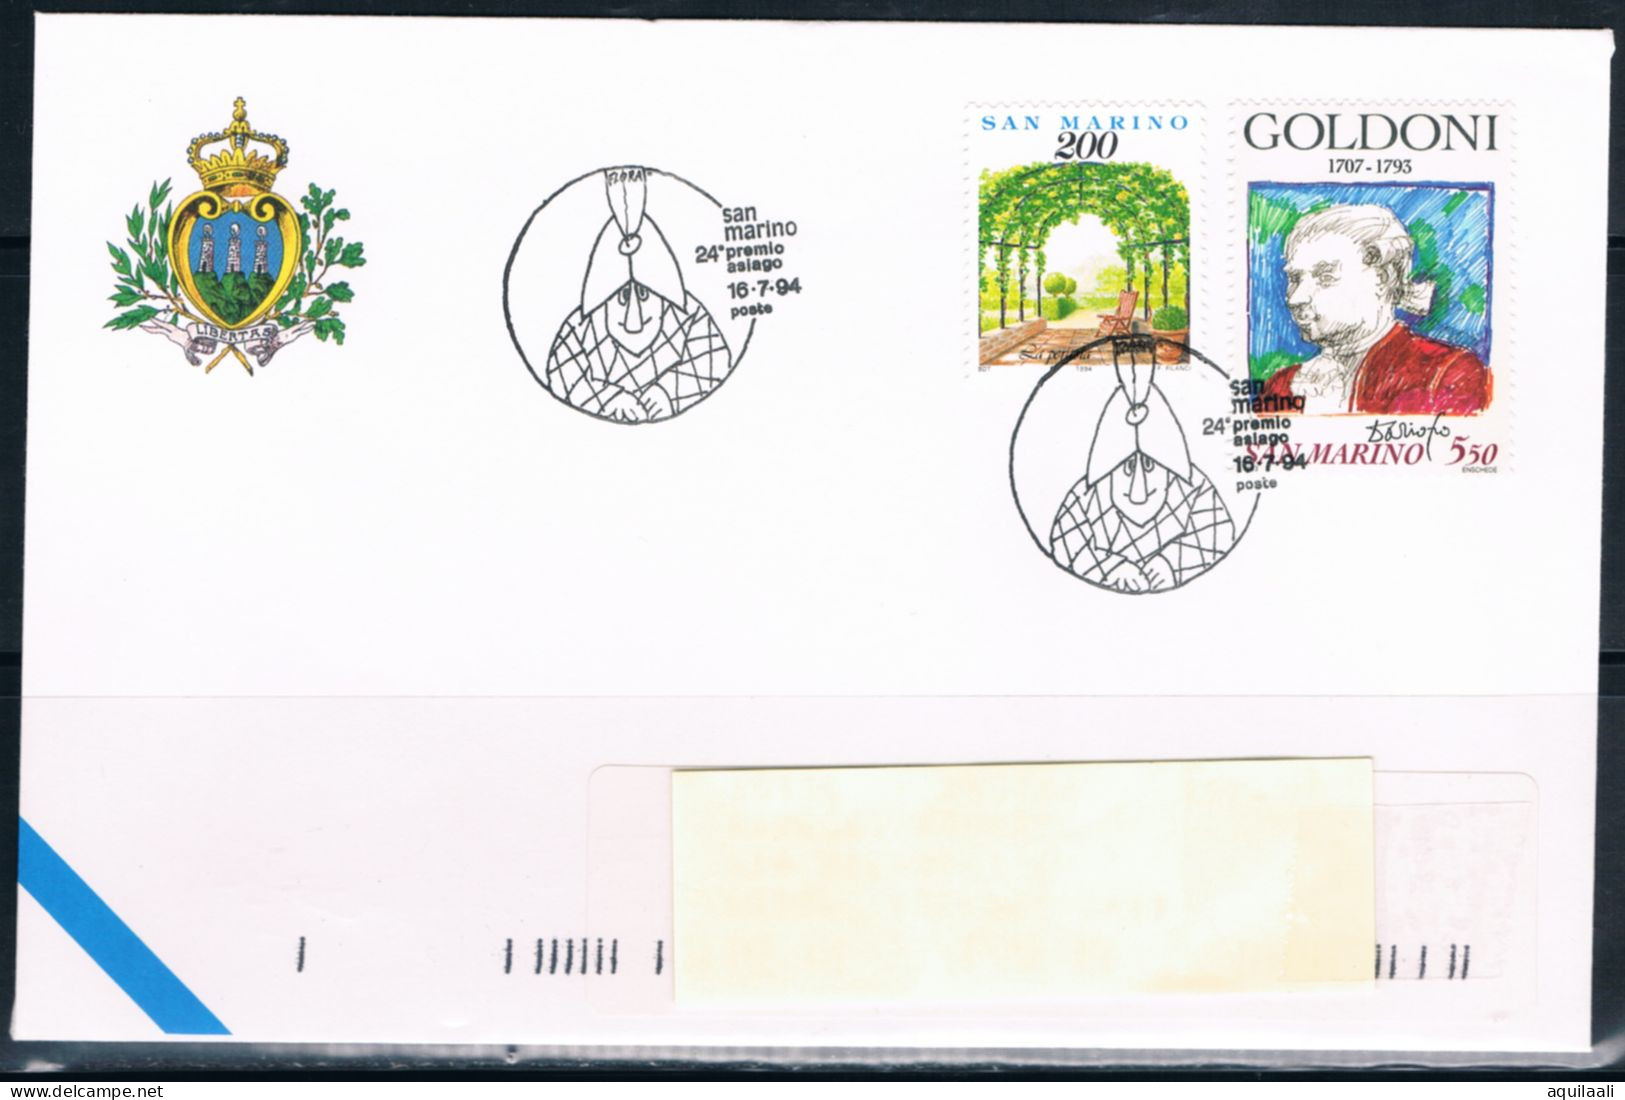 SAN MARINO 1994 - "24' Premio Asiago ", Annullo Speciale. - Briefmarkenausstellungen